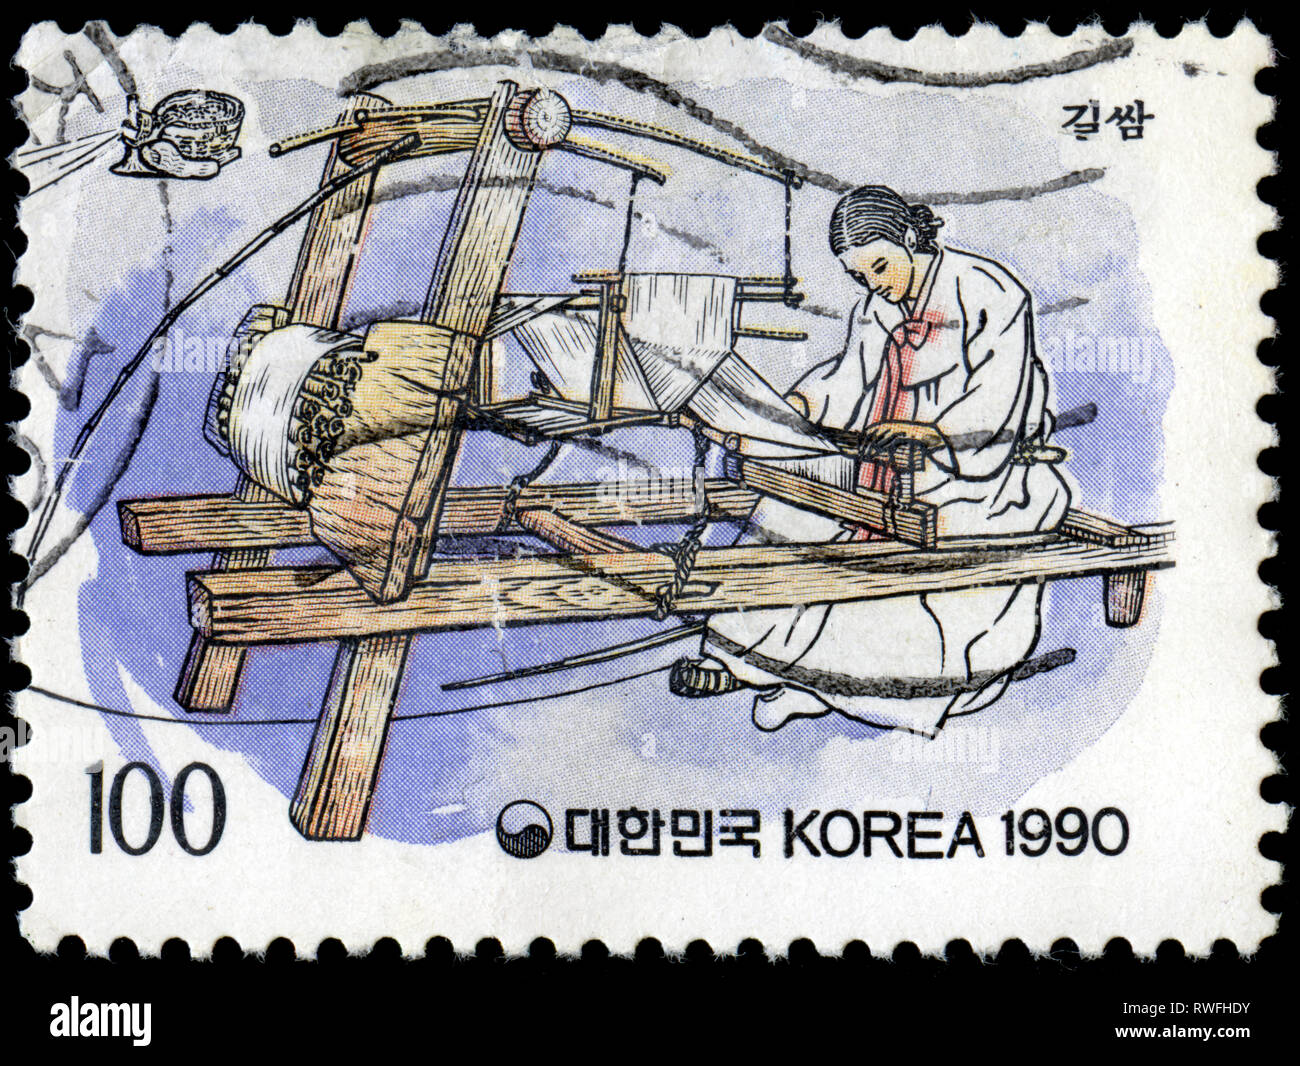 Timbre-poste de la Corée du Sud dans le folklore série émise en 1990 Banque D'Images